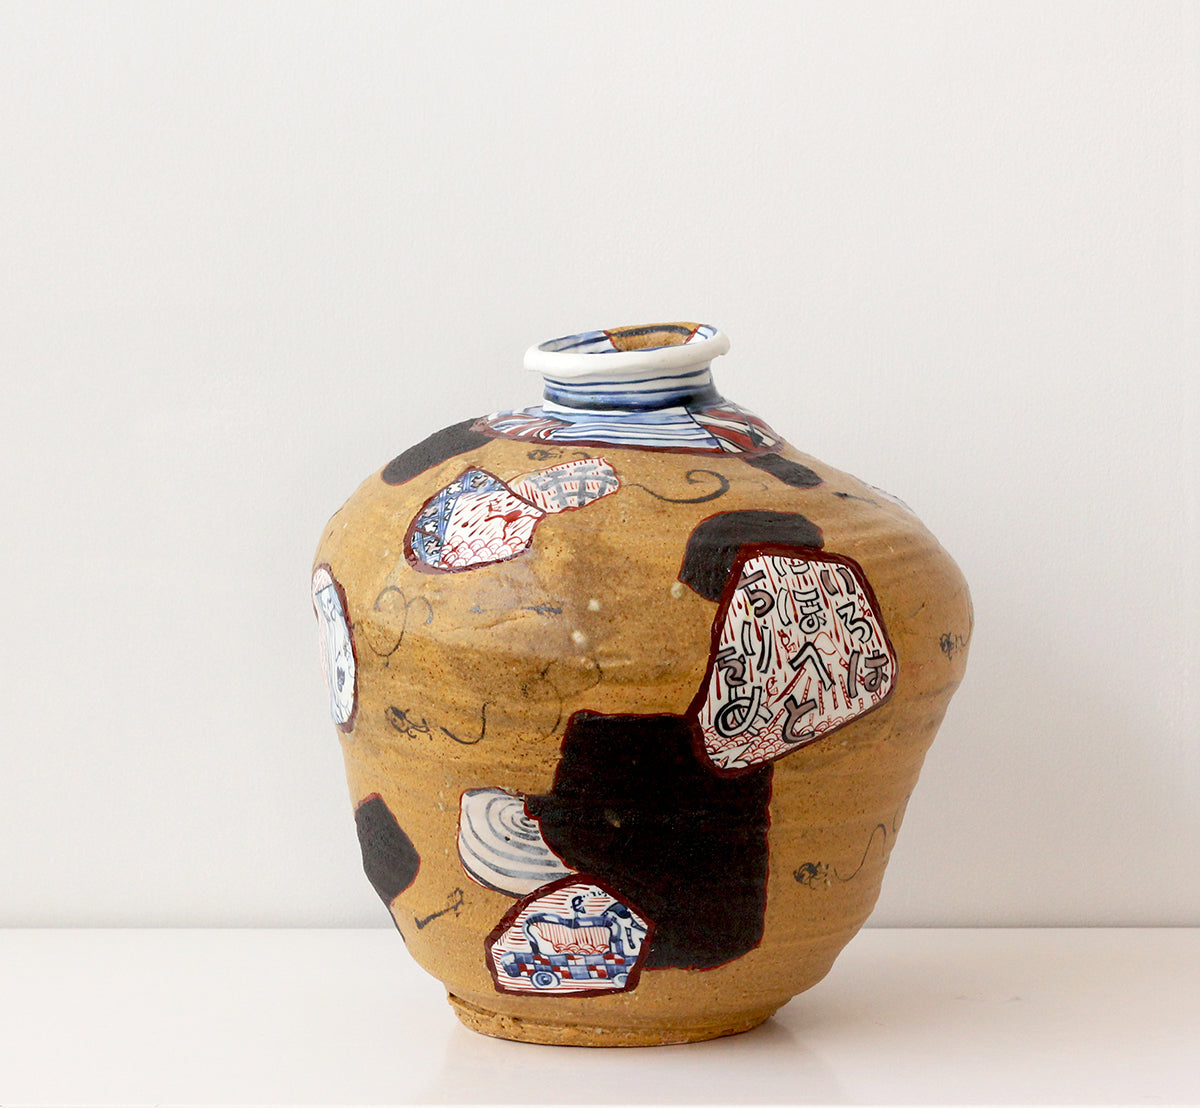 Yobitsugi Style Vase #1, 2019